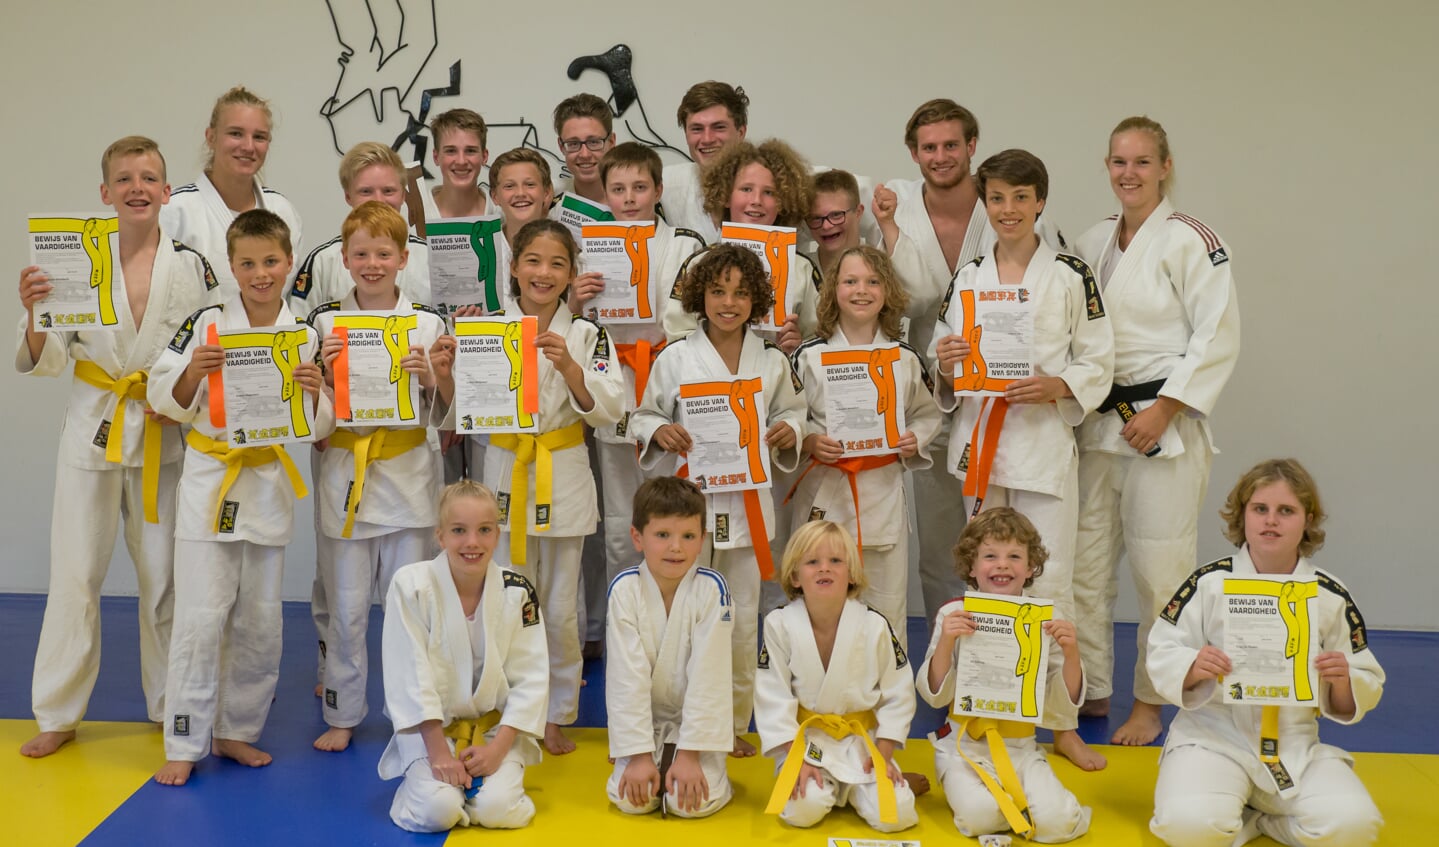 De trotse judoka's van Dojo 't Loo met hun nieuwe judobanden en diploma's